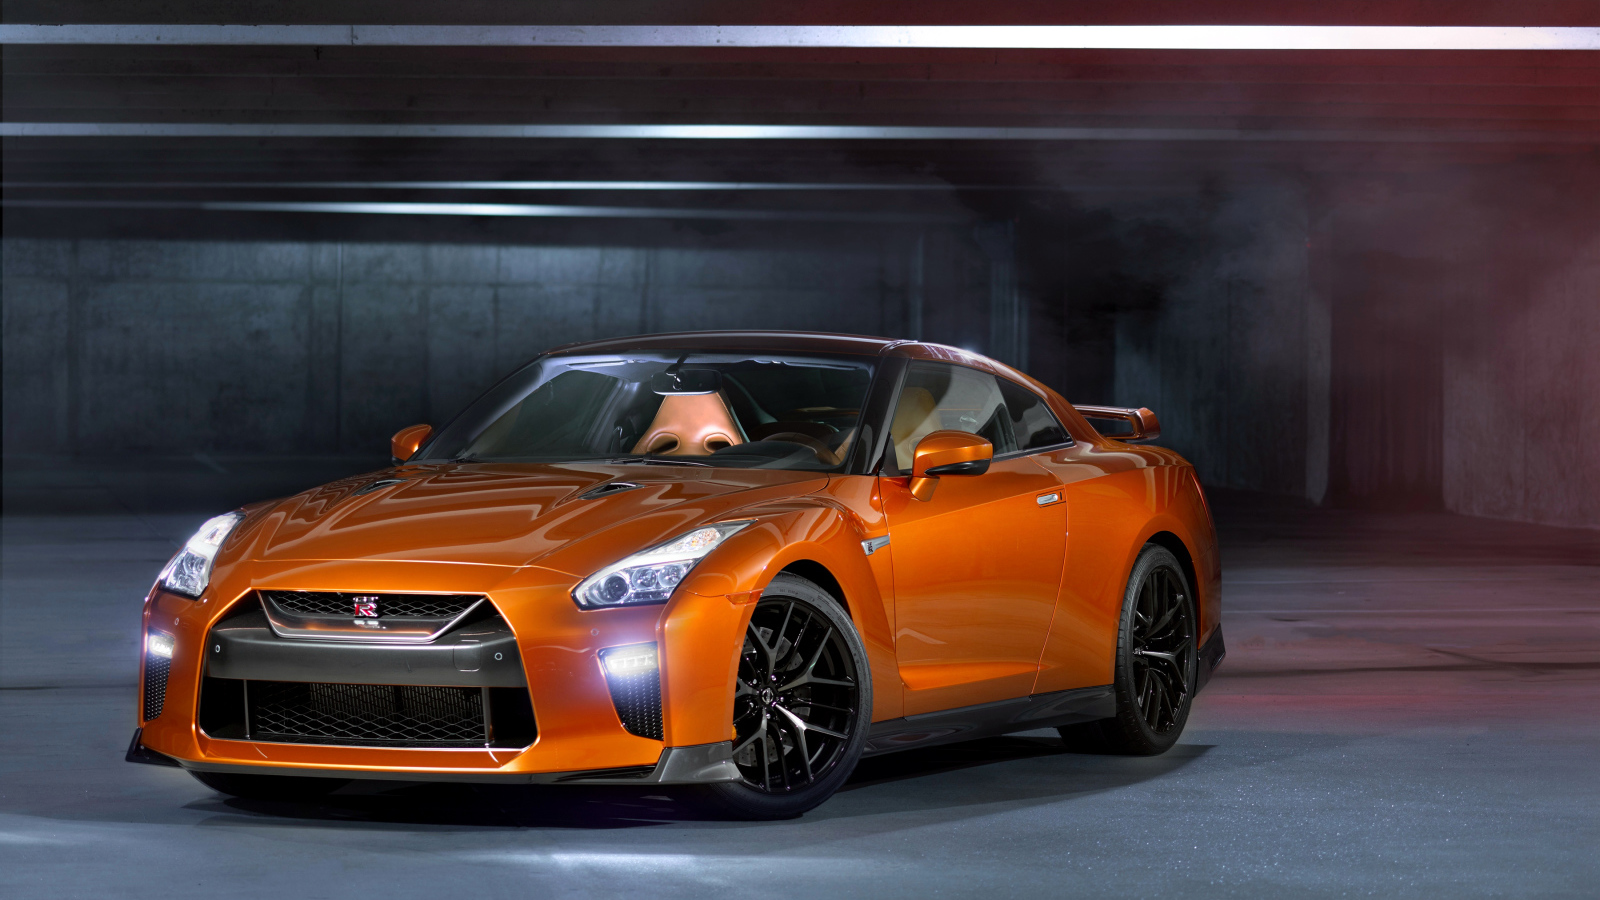 Быстрый спортивный автомобиль Nissan GT-R оранжевого цвета